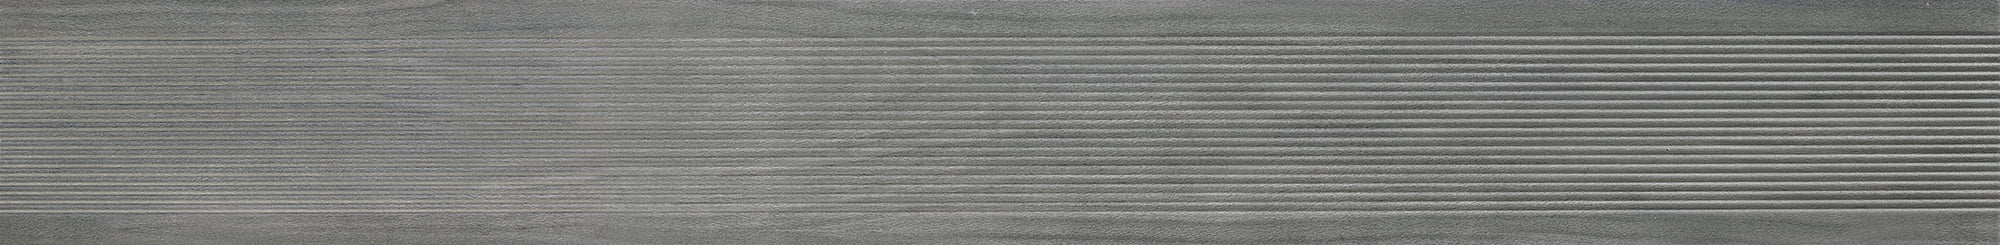 Gamme Deck rainuré Grey - Système classique